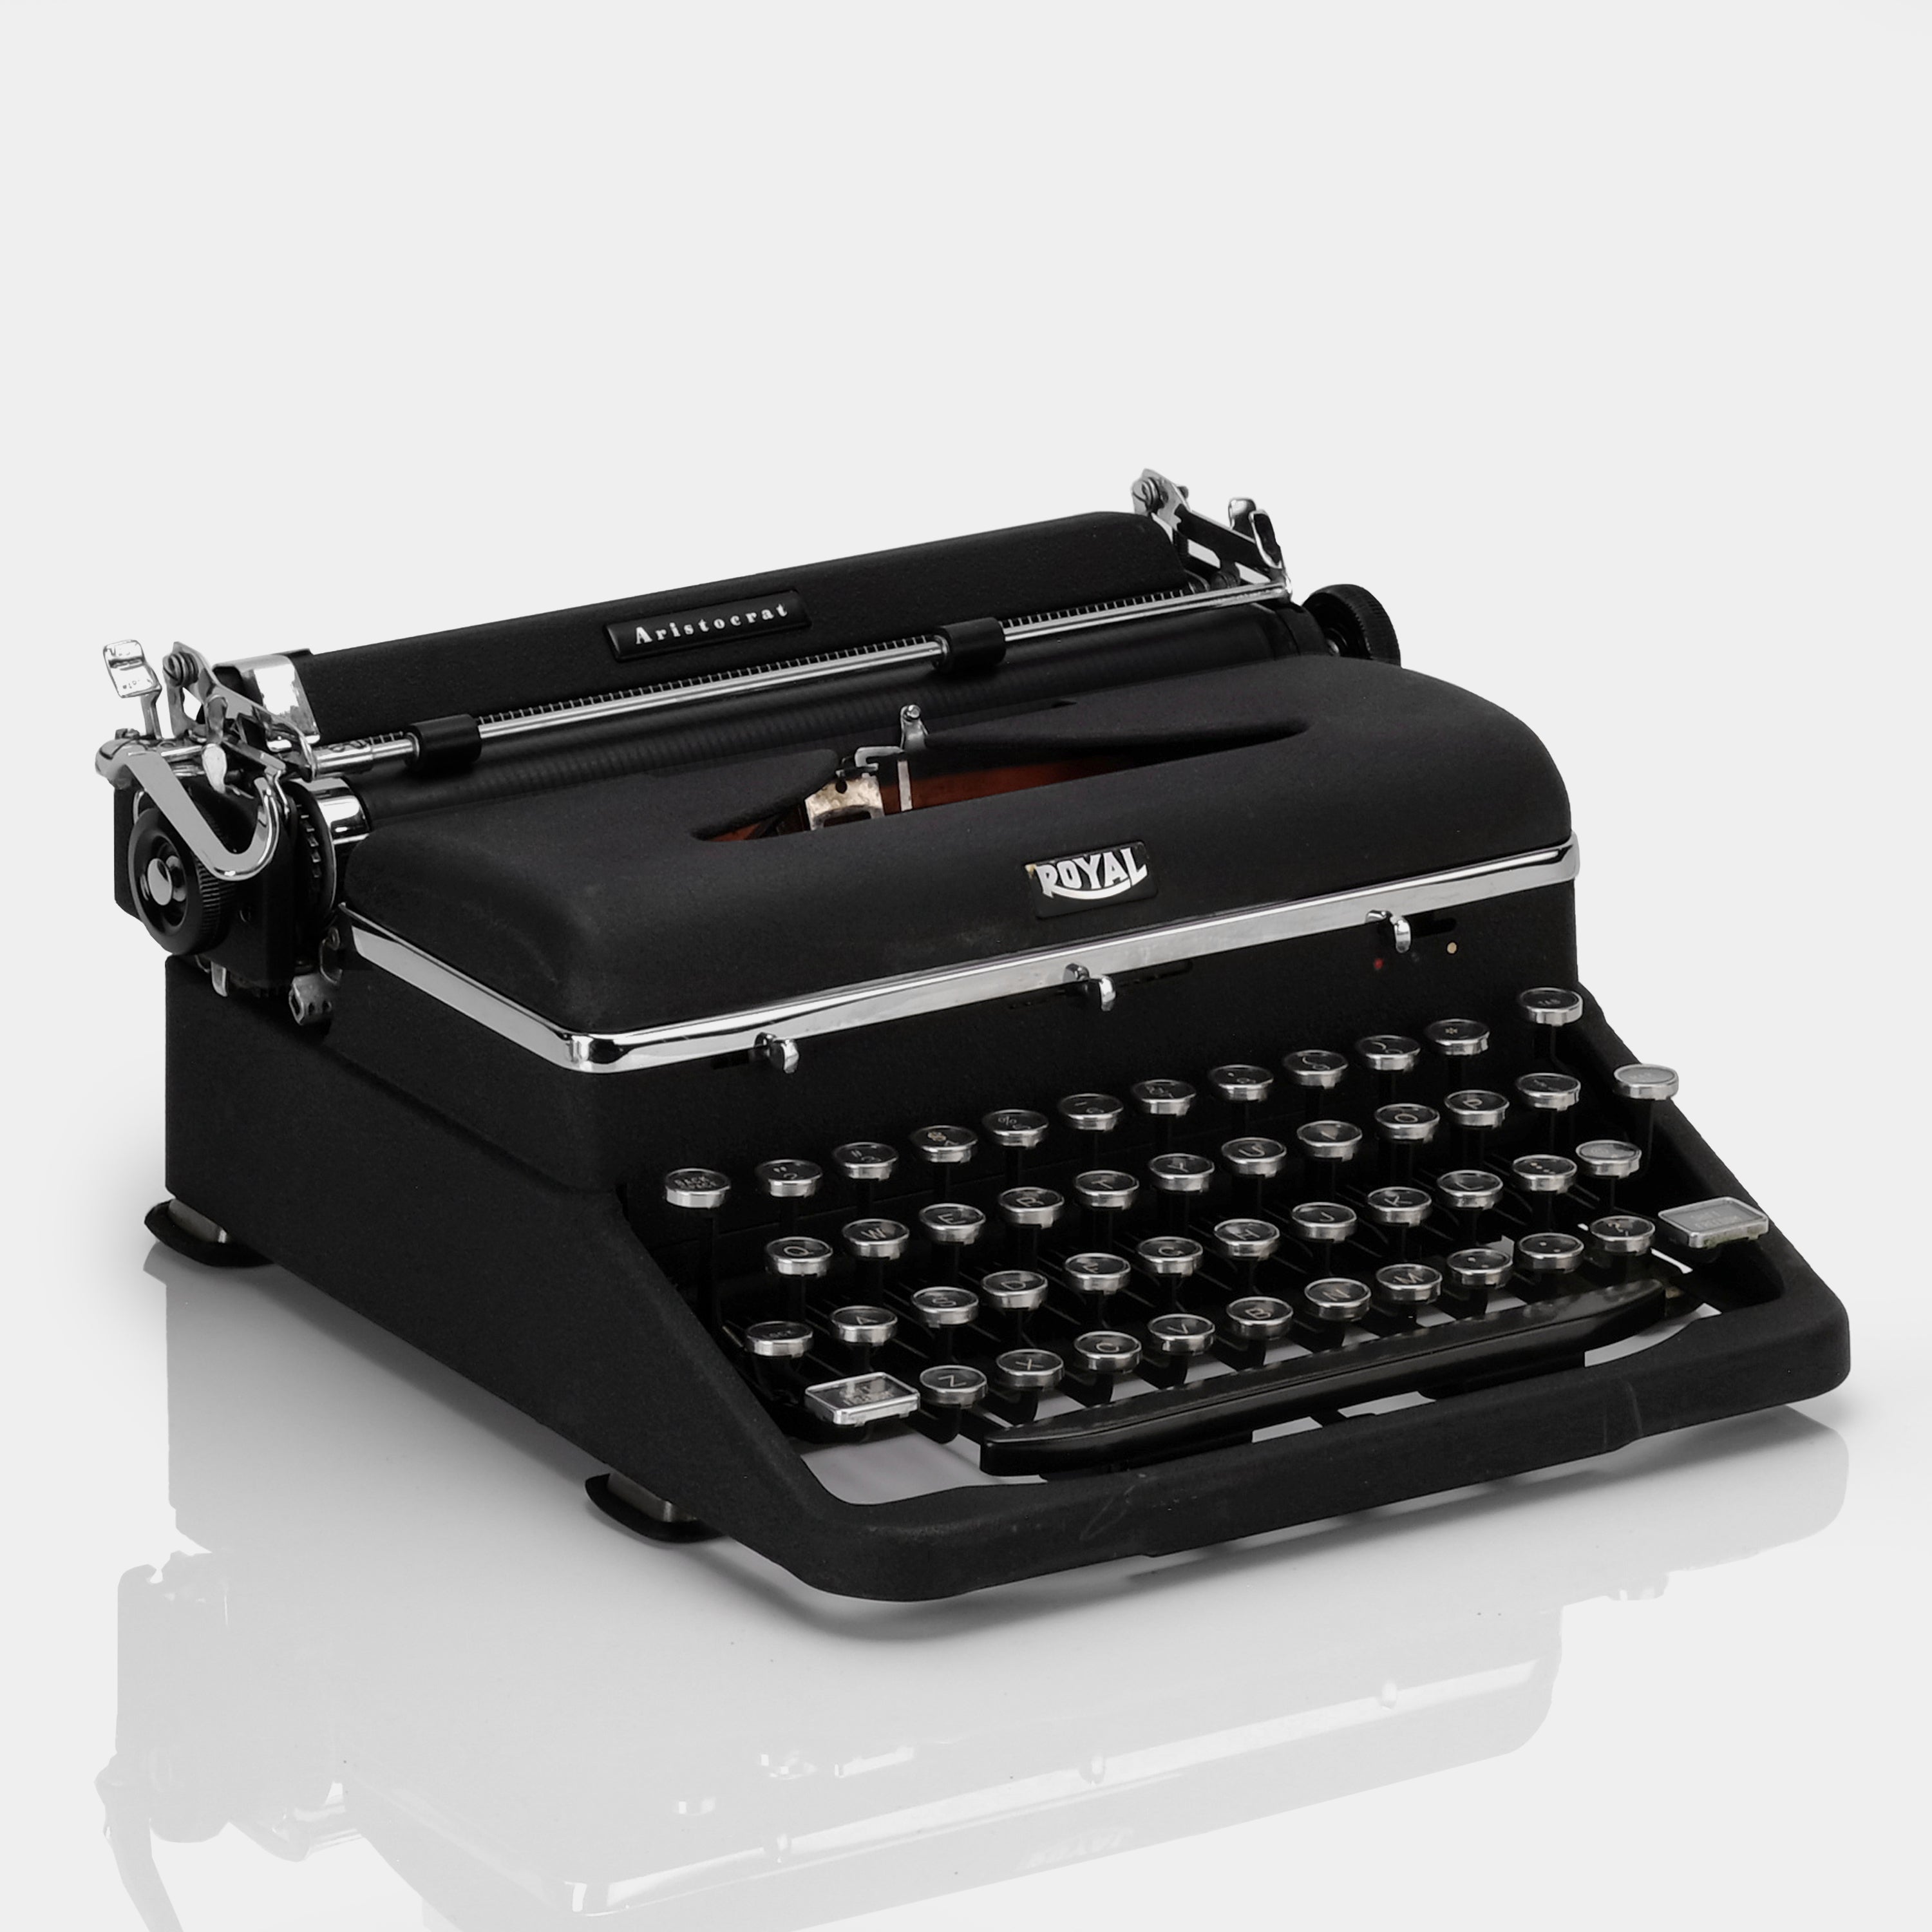 Royal Aristocrat Black Manual Typewriter